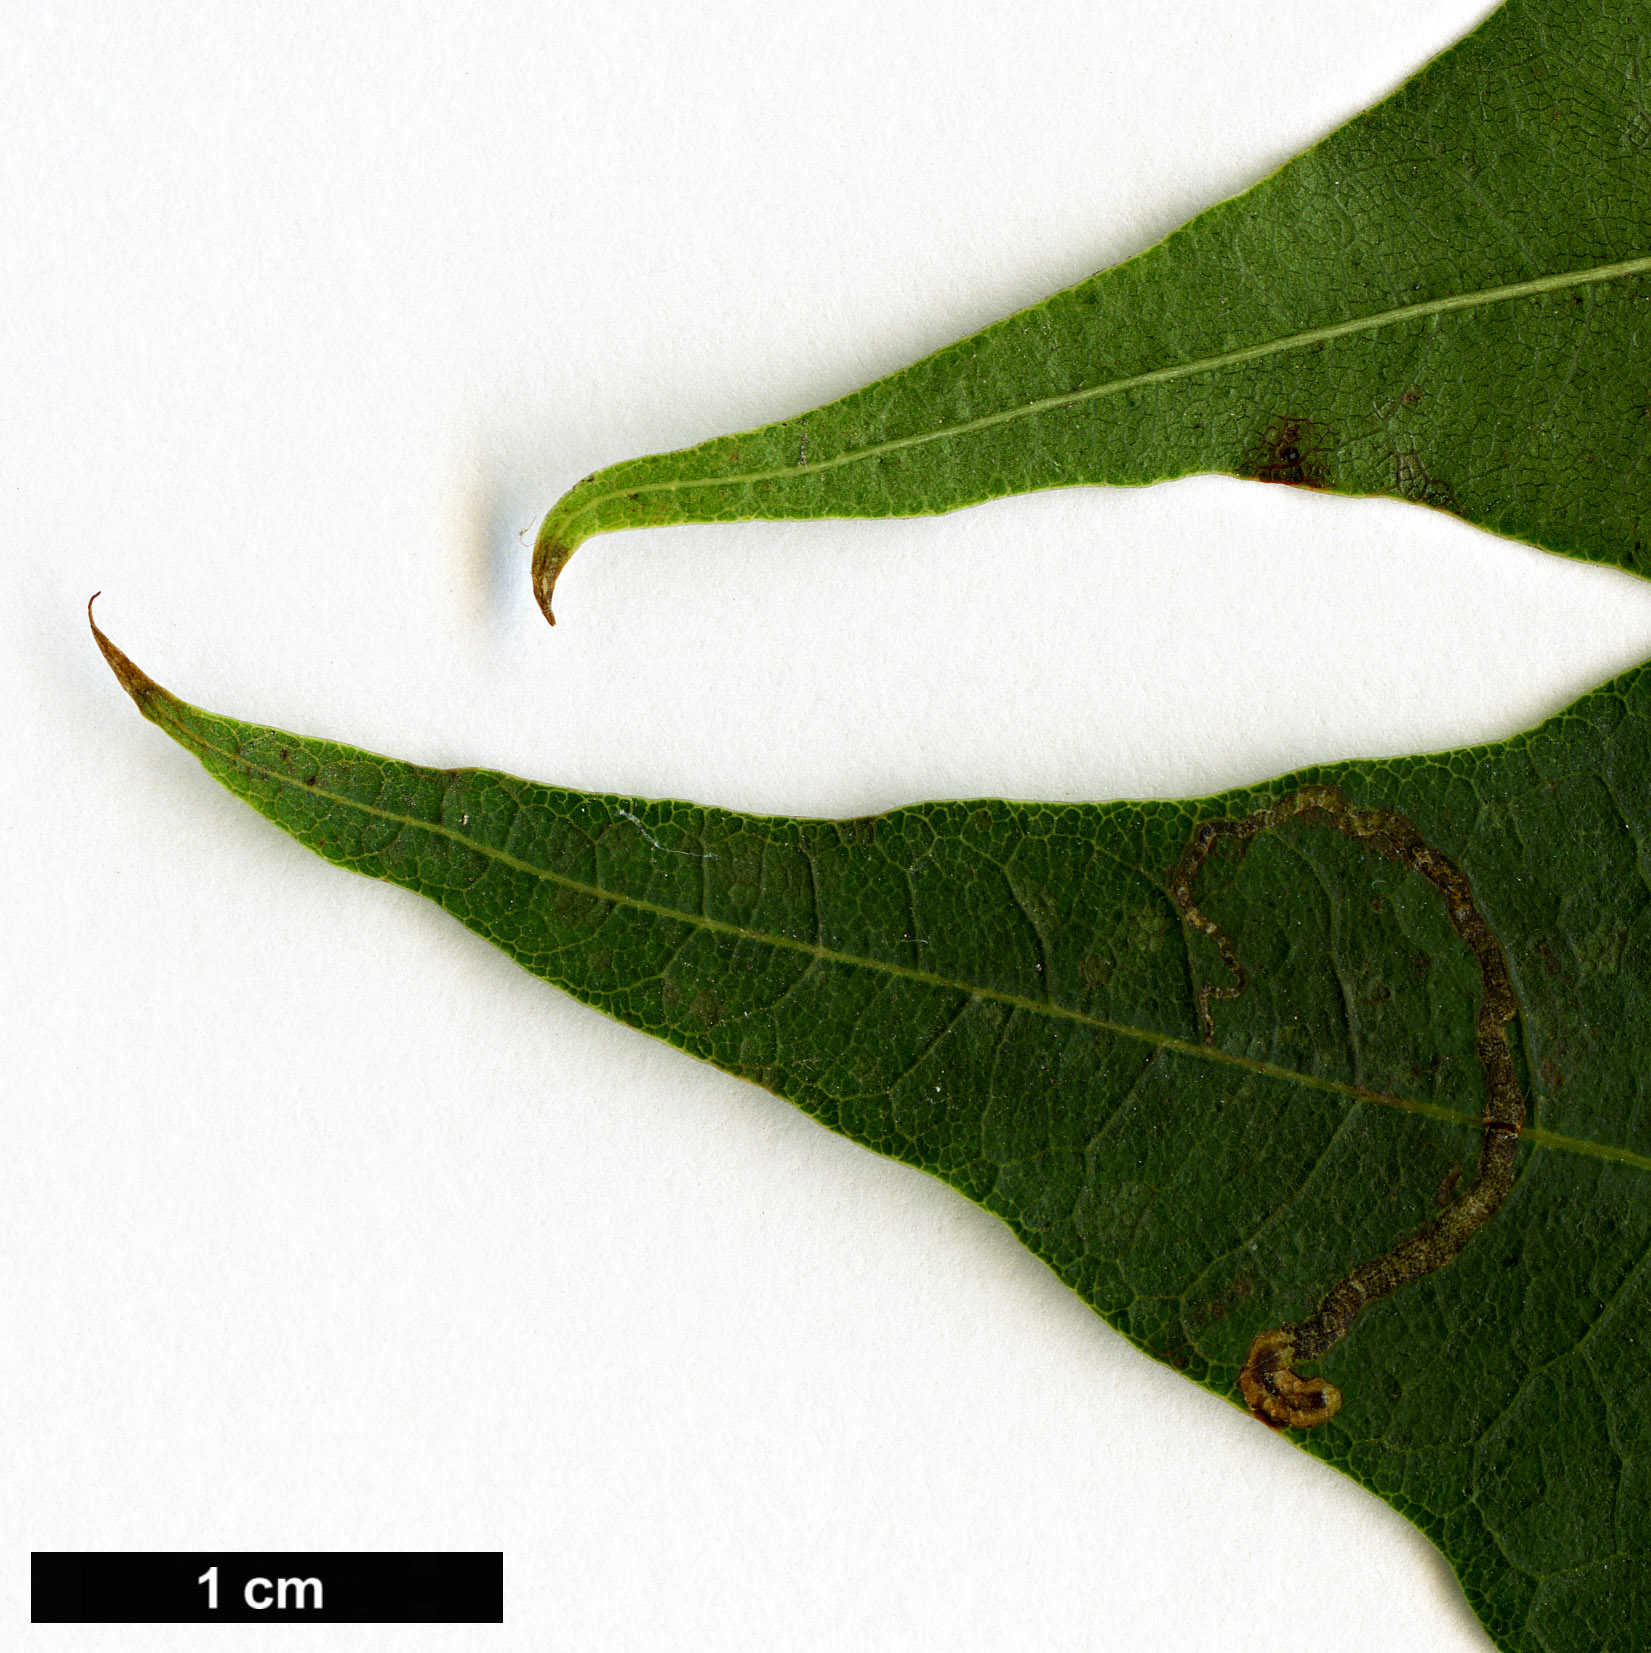 High resolution image: Family: Sapindaceae - Genus: Acer - Taxon: cappadocicum - SpeciesSub: subsp. sinicum